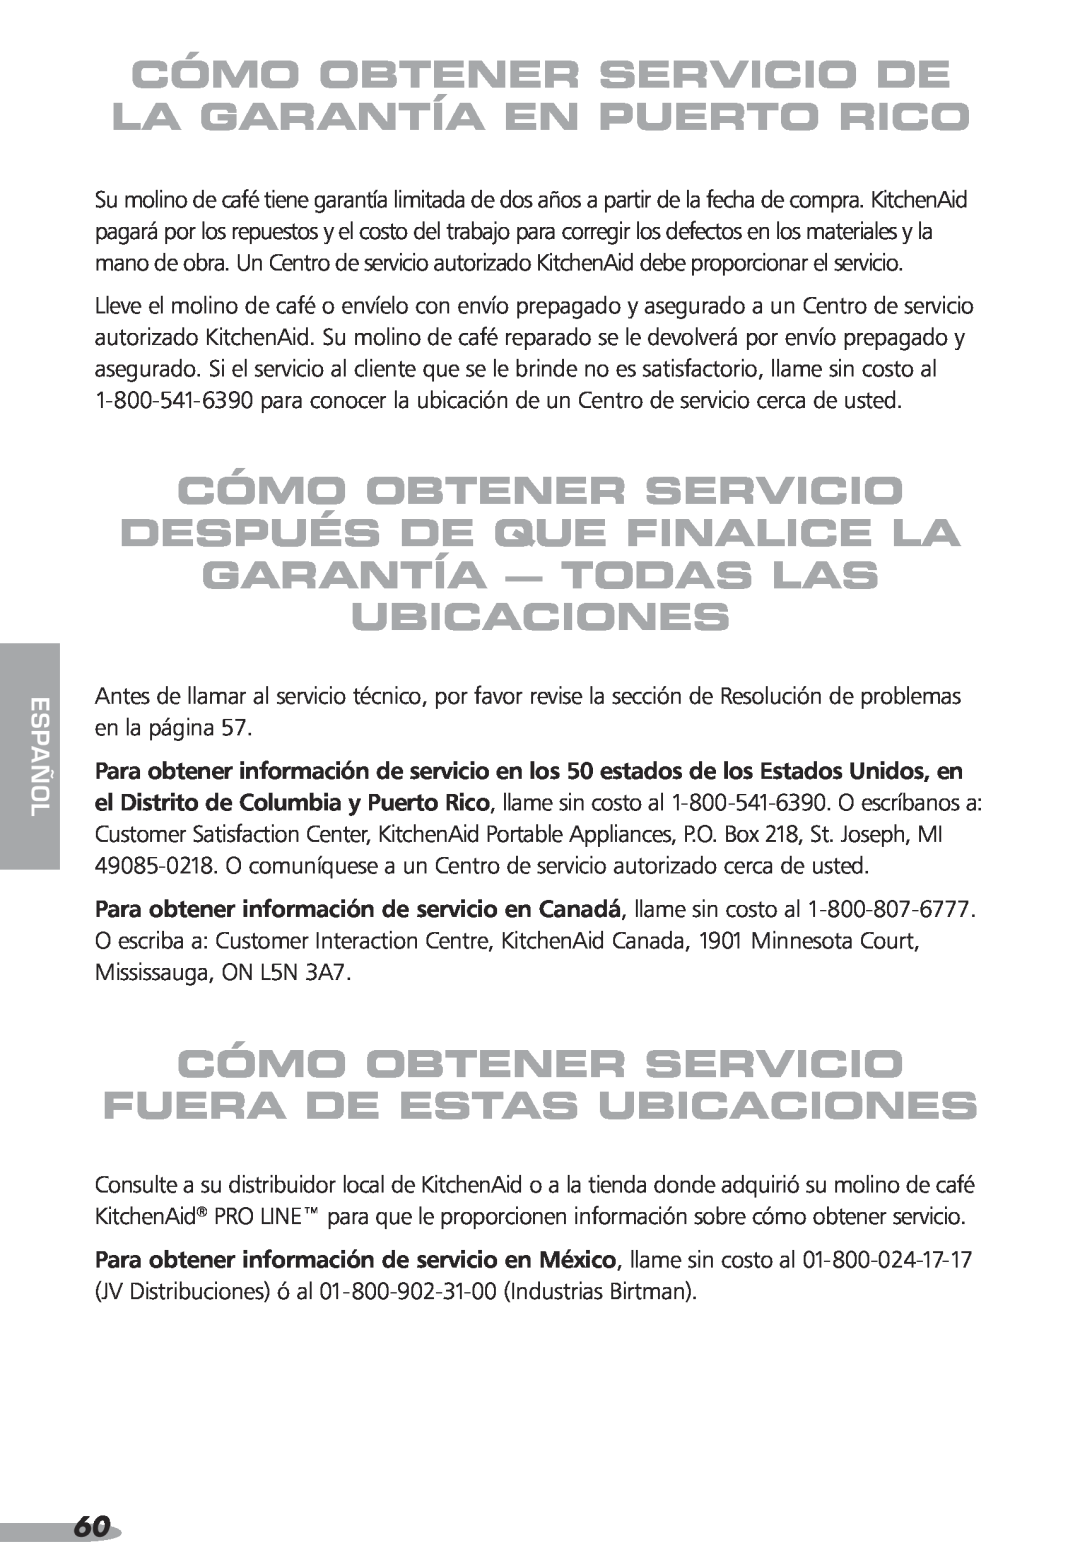 KitchenAid 87, KPCG100, Coffee Grinder, PRO LINE Cómo Obtener Servicio De La Garantía En Puerto Rico, Ubicaciones, español 